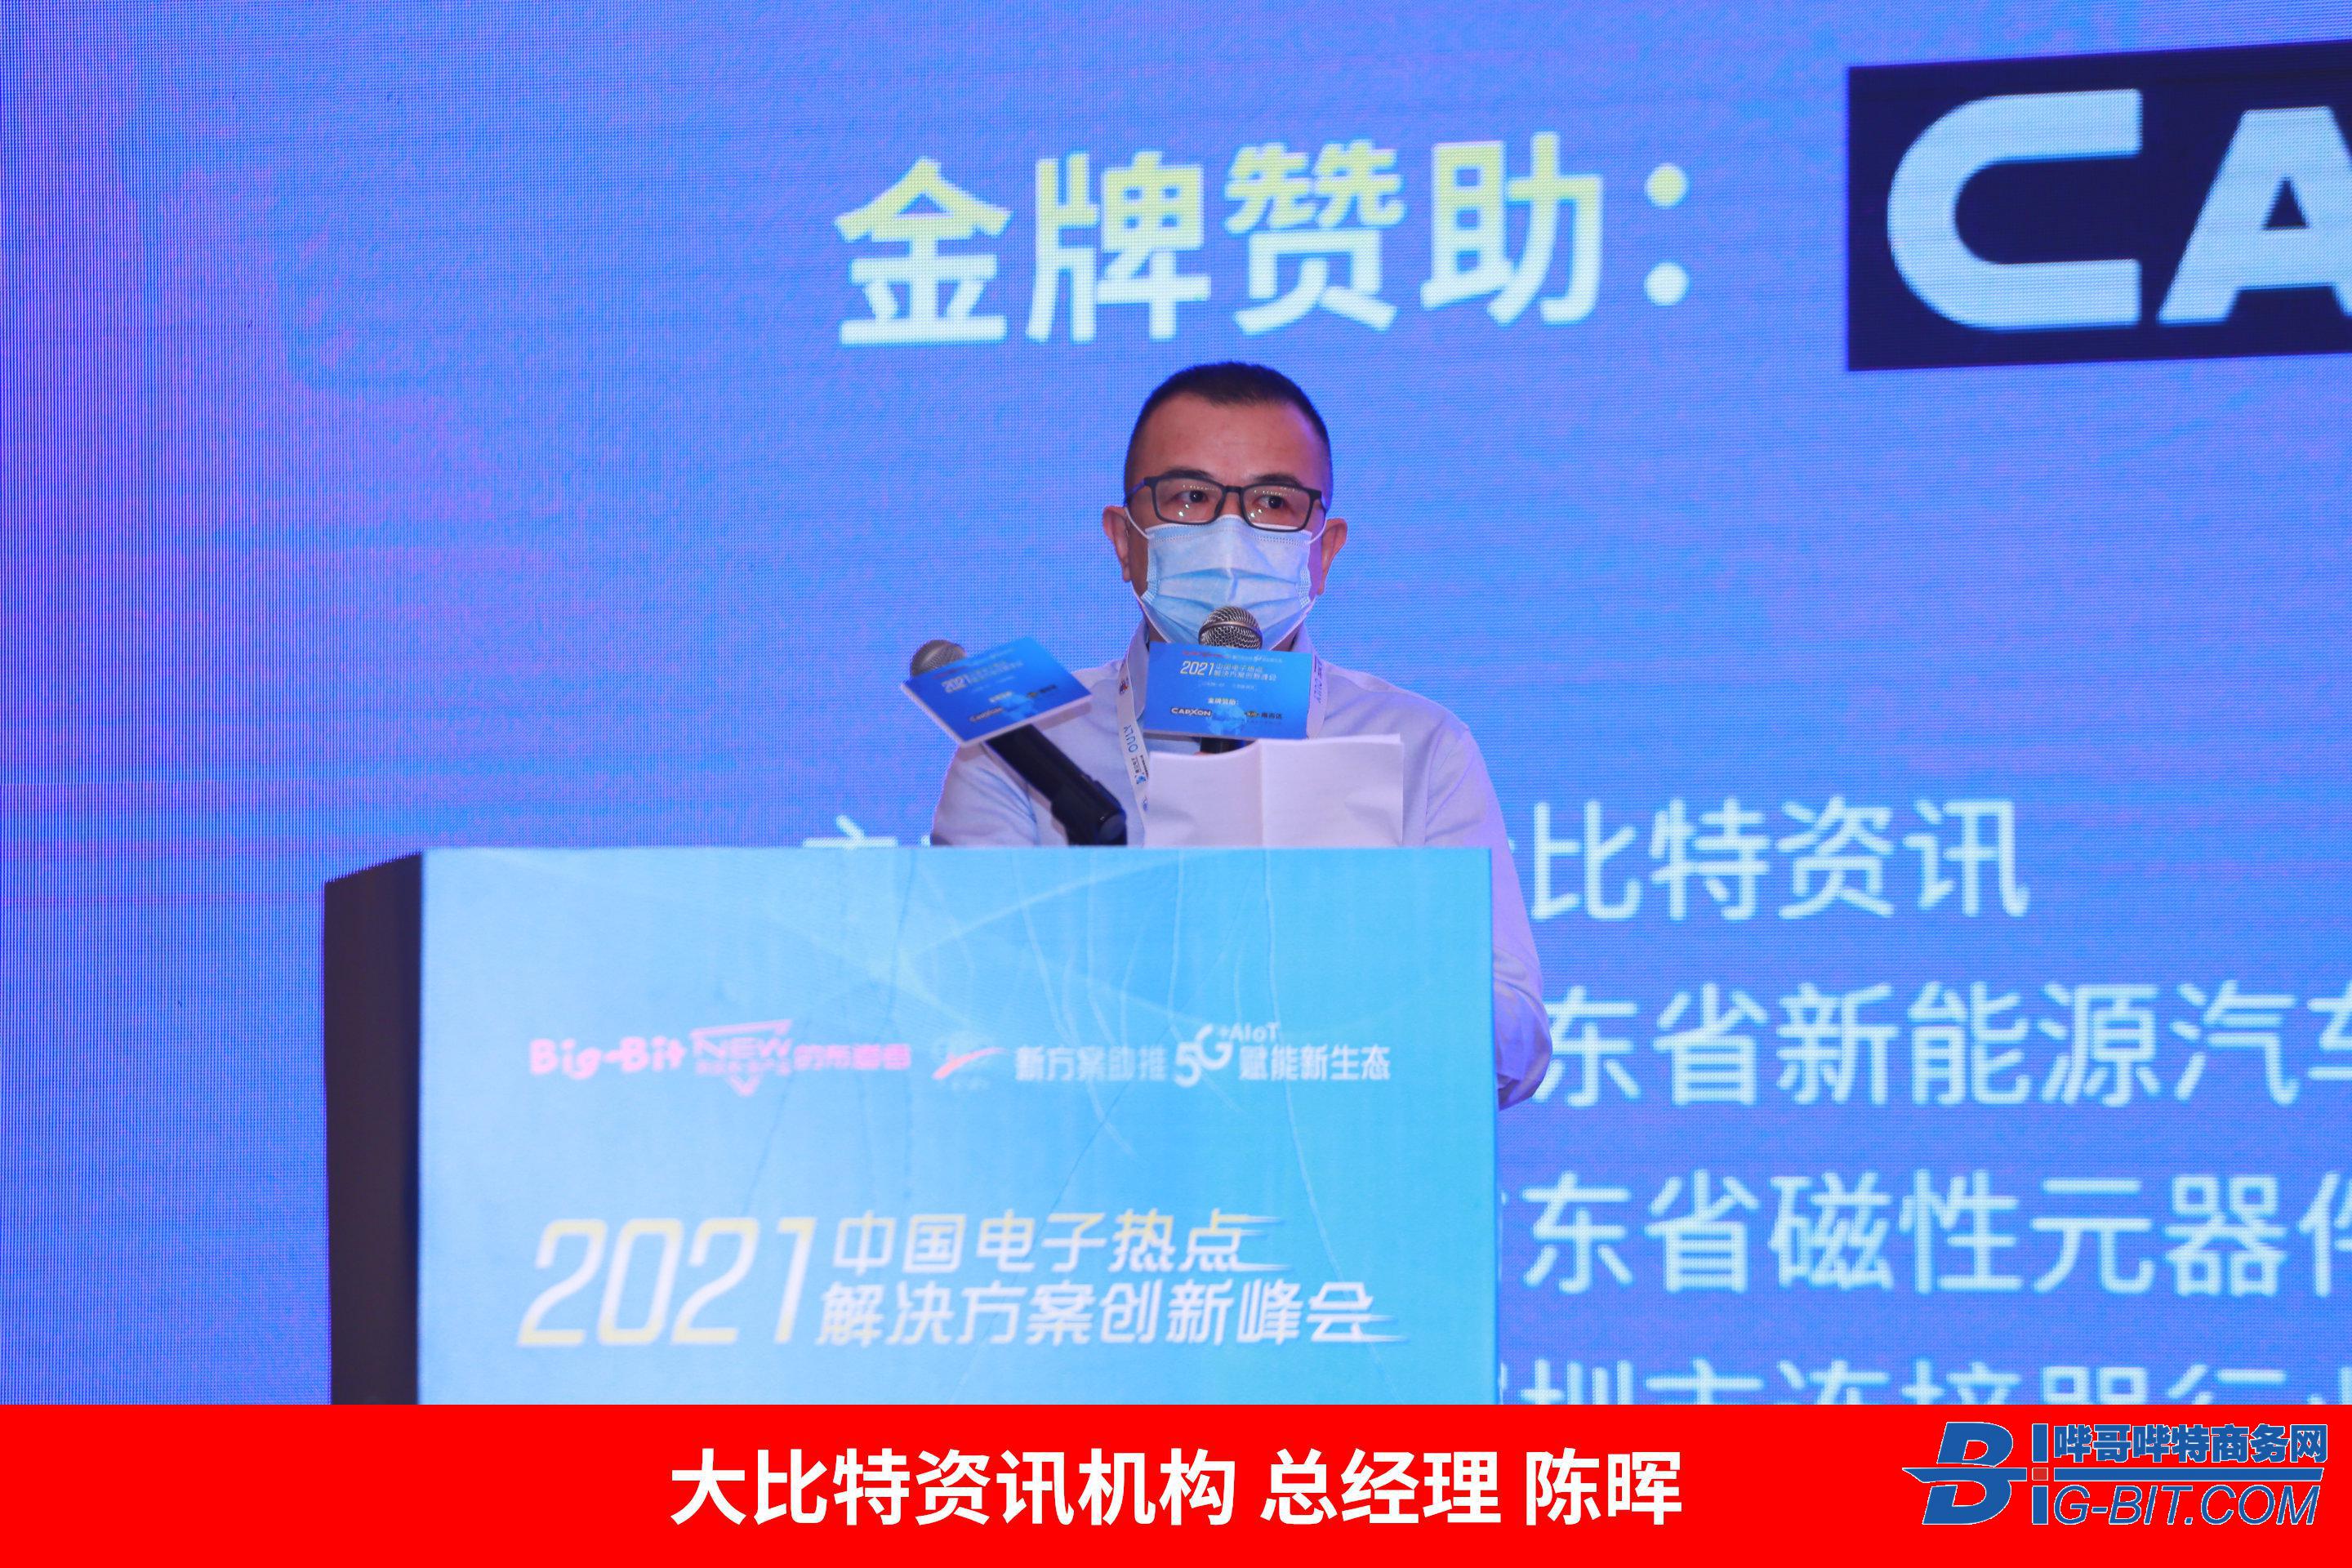 2021'中國電子熱點解決方案創新峰會首場研討會(新能源汽車)告捷